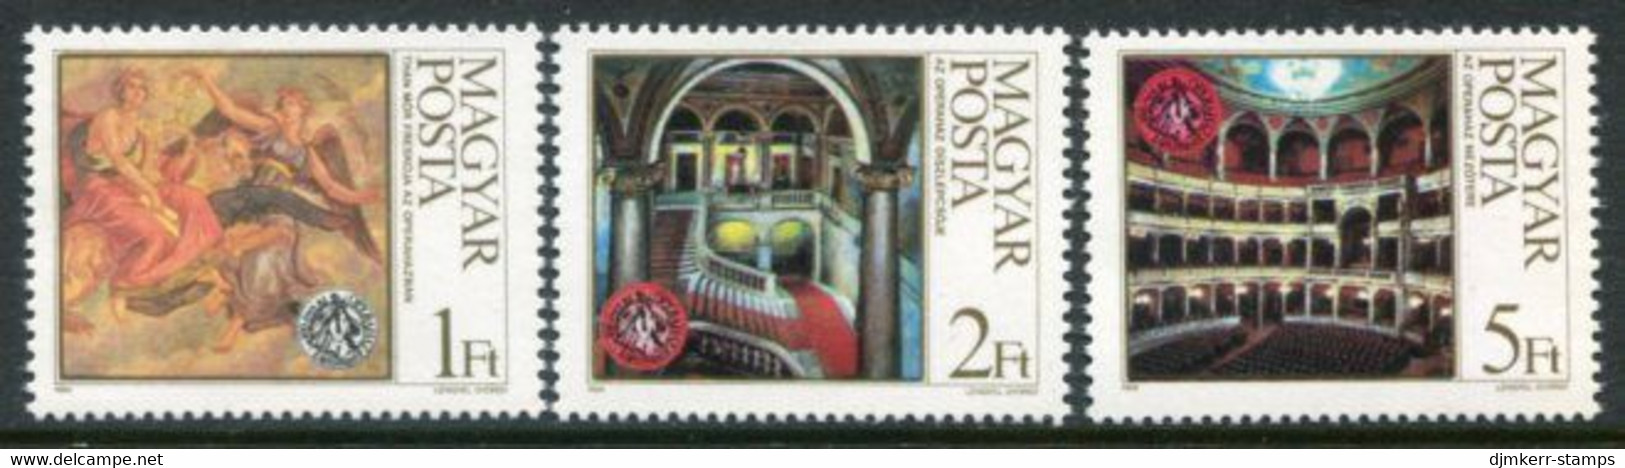 HUNGARY 1984 Opera House Centenary  MNH / **.  Michel 3697-99 - Neufs